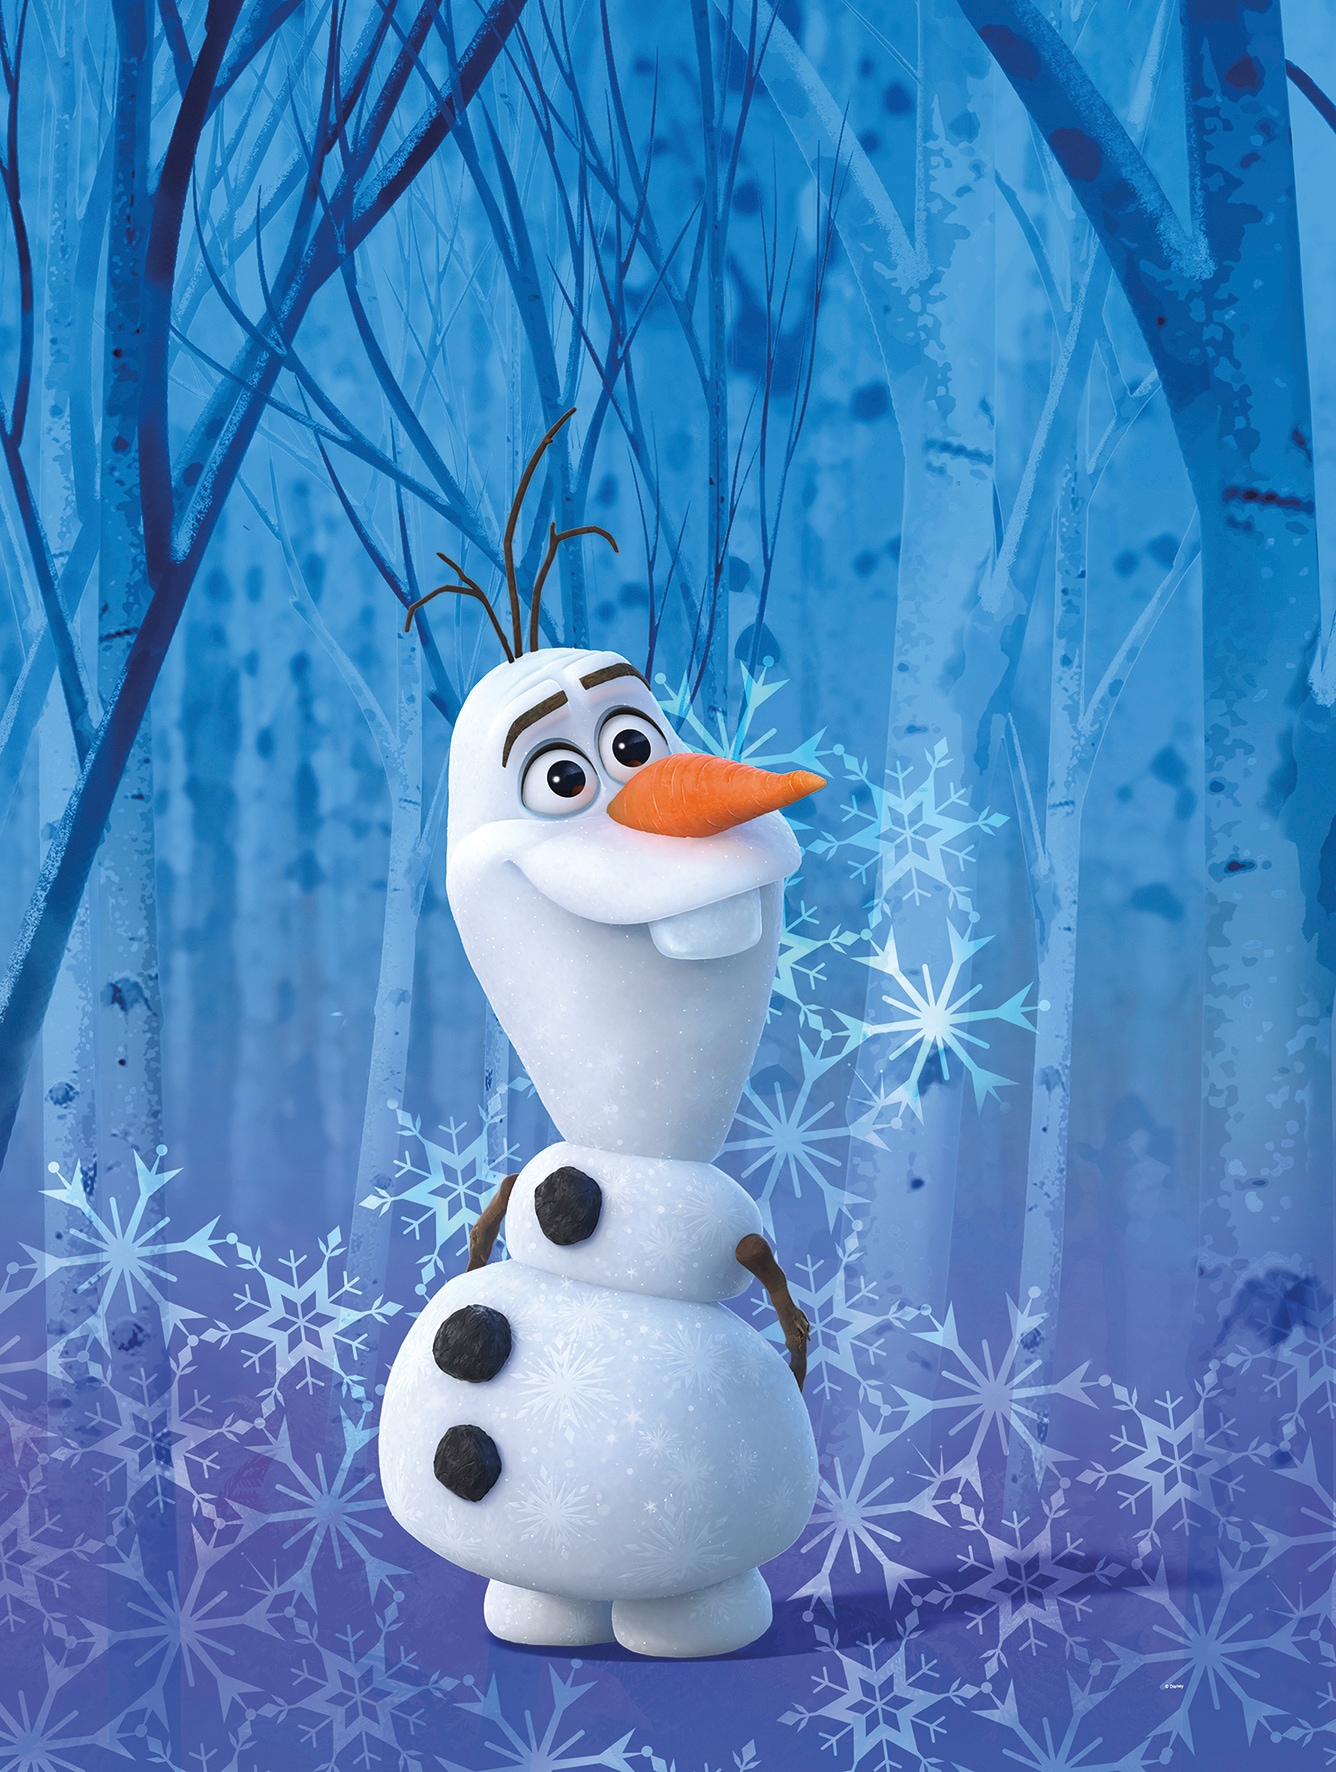 Poster »Frozen Olaf Crystal«, Disney, (1 St.), Kinderzimmer, Schlafzimmer, Wohnzimmer